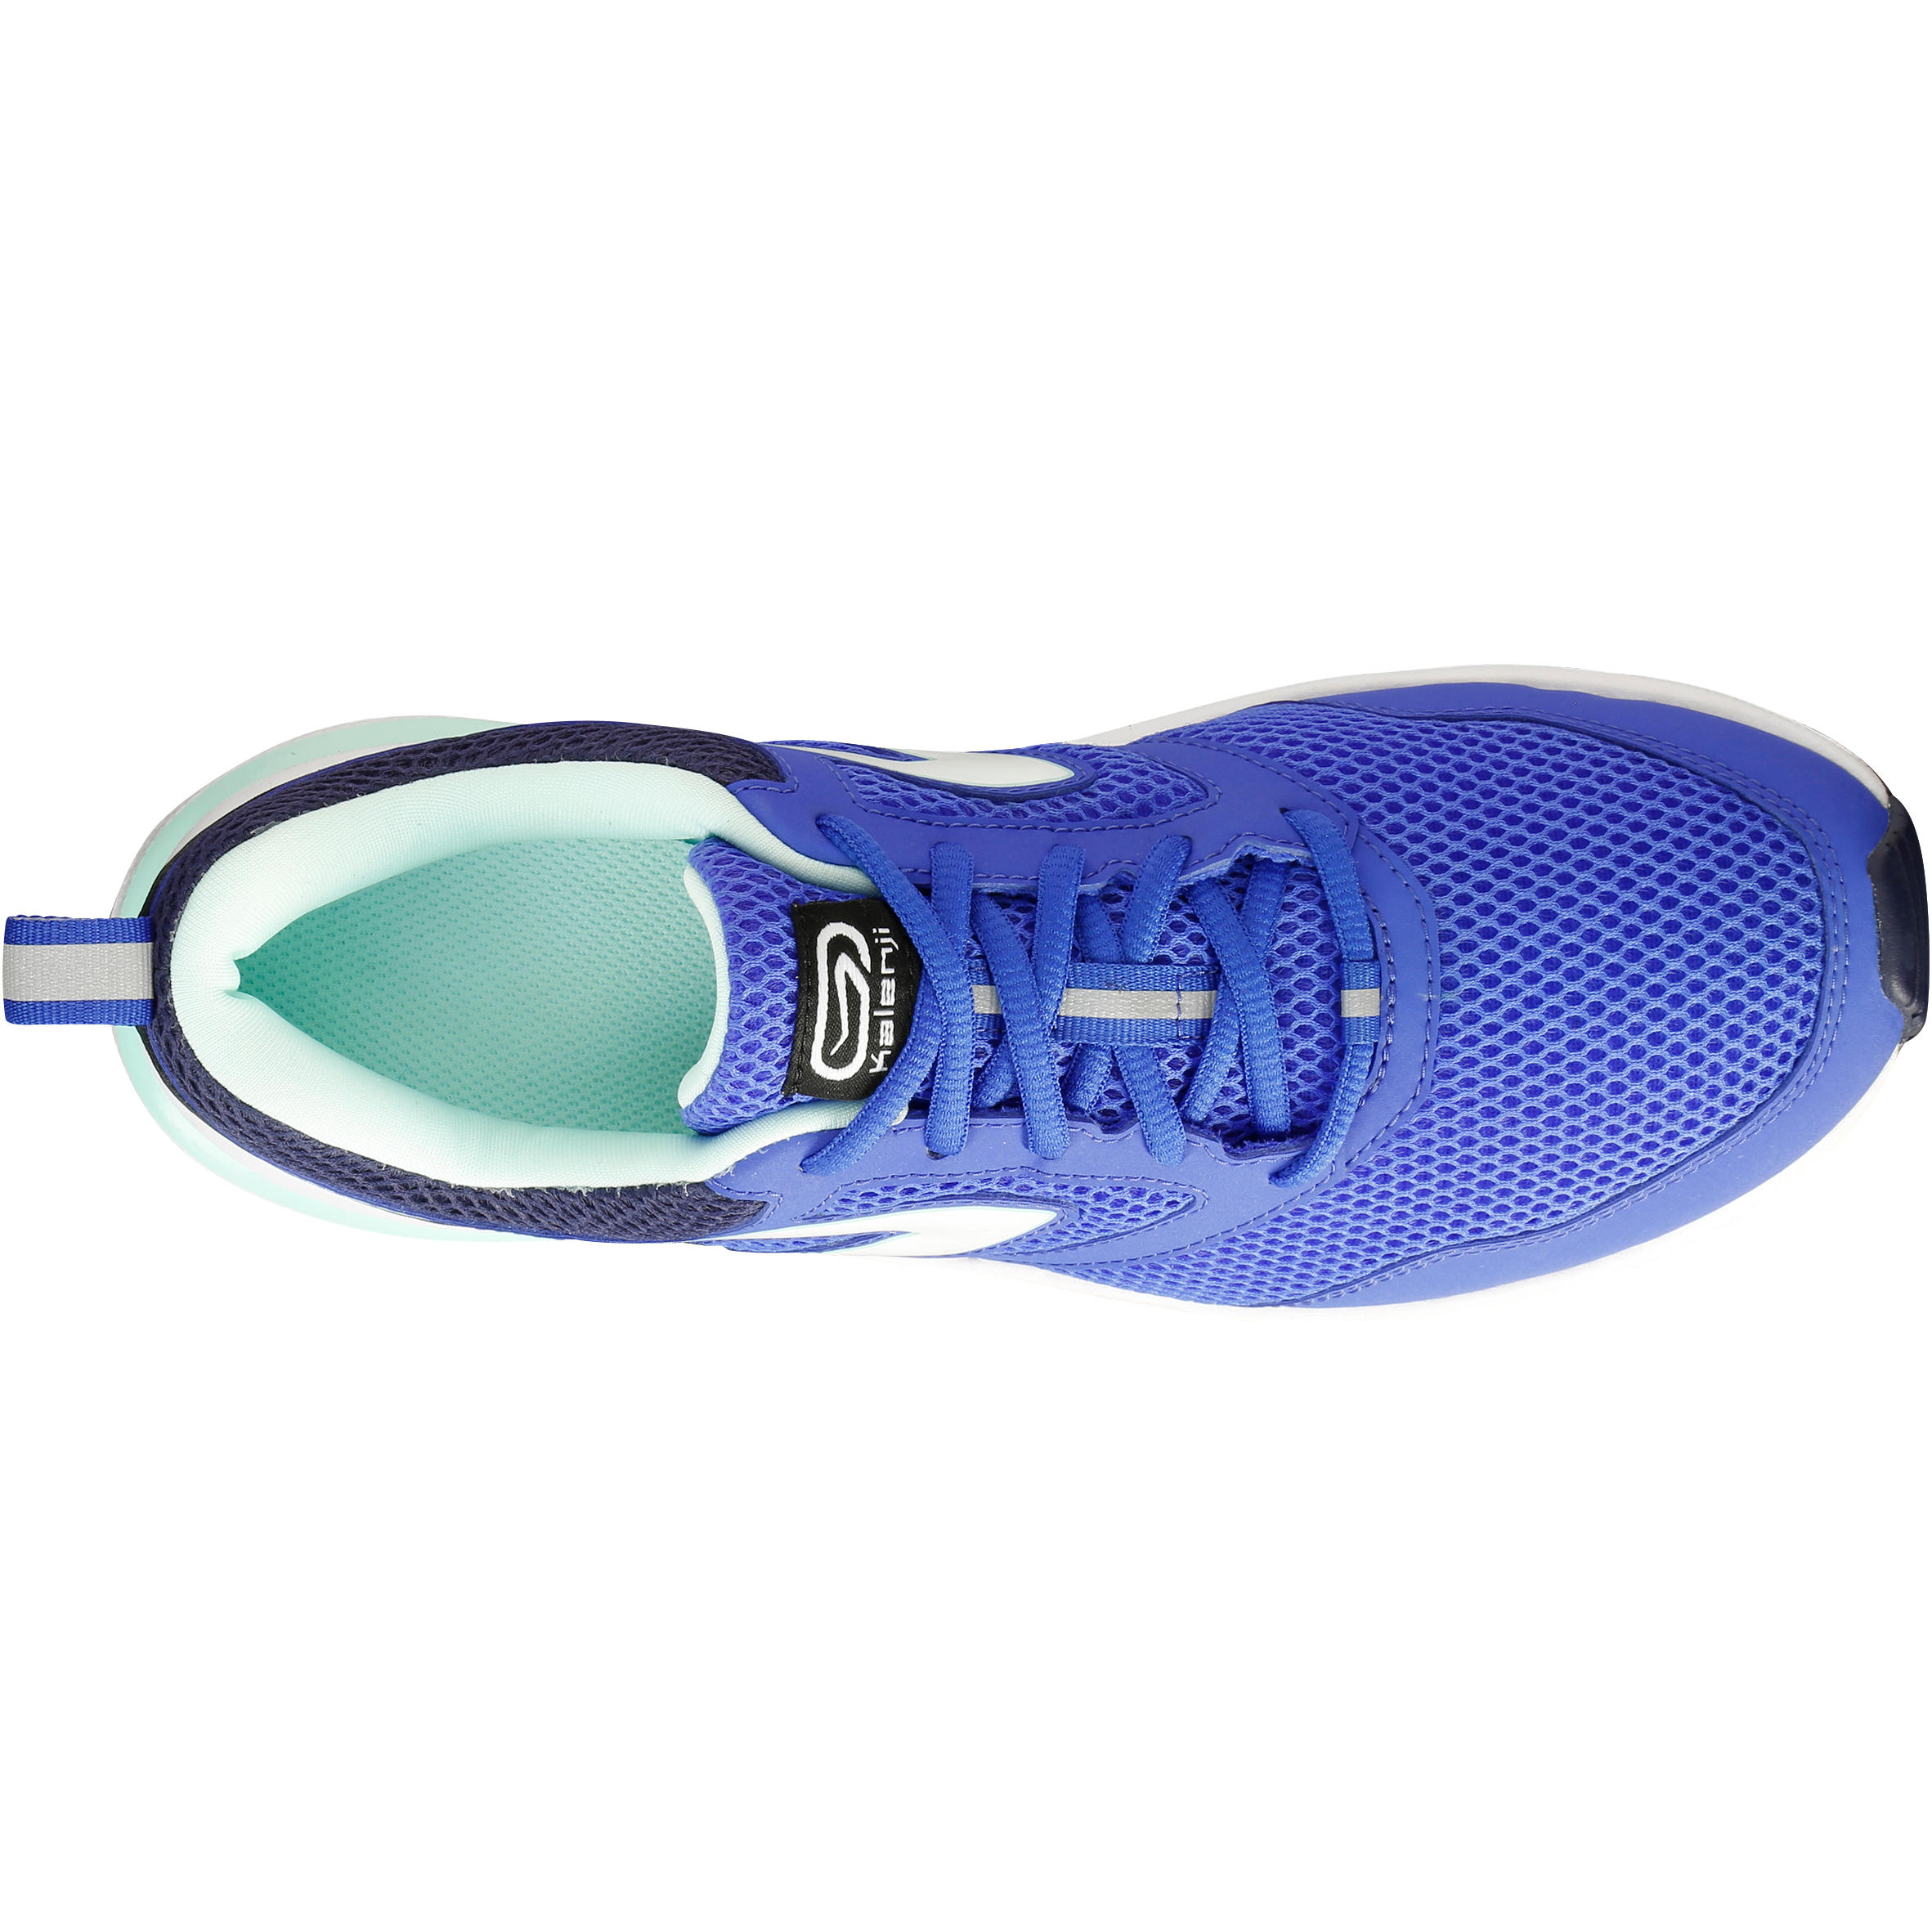 Run Active Women's Running Shoes - Blue 6/6